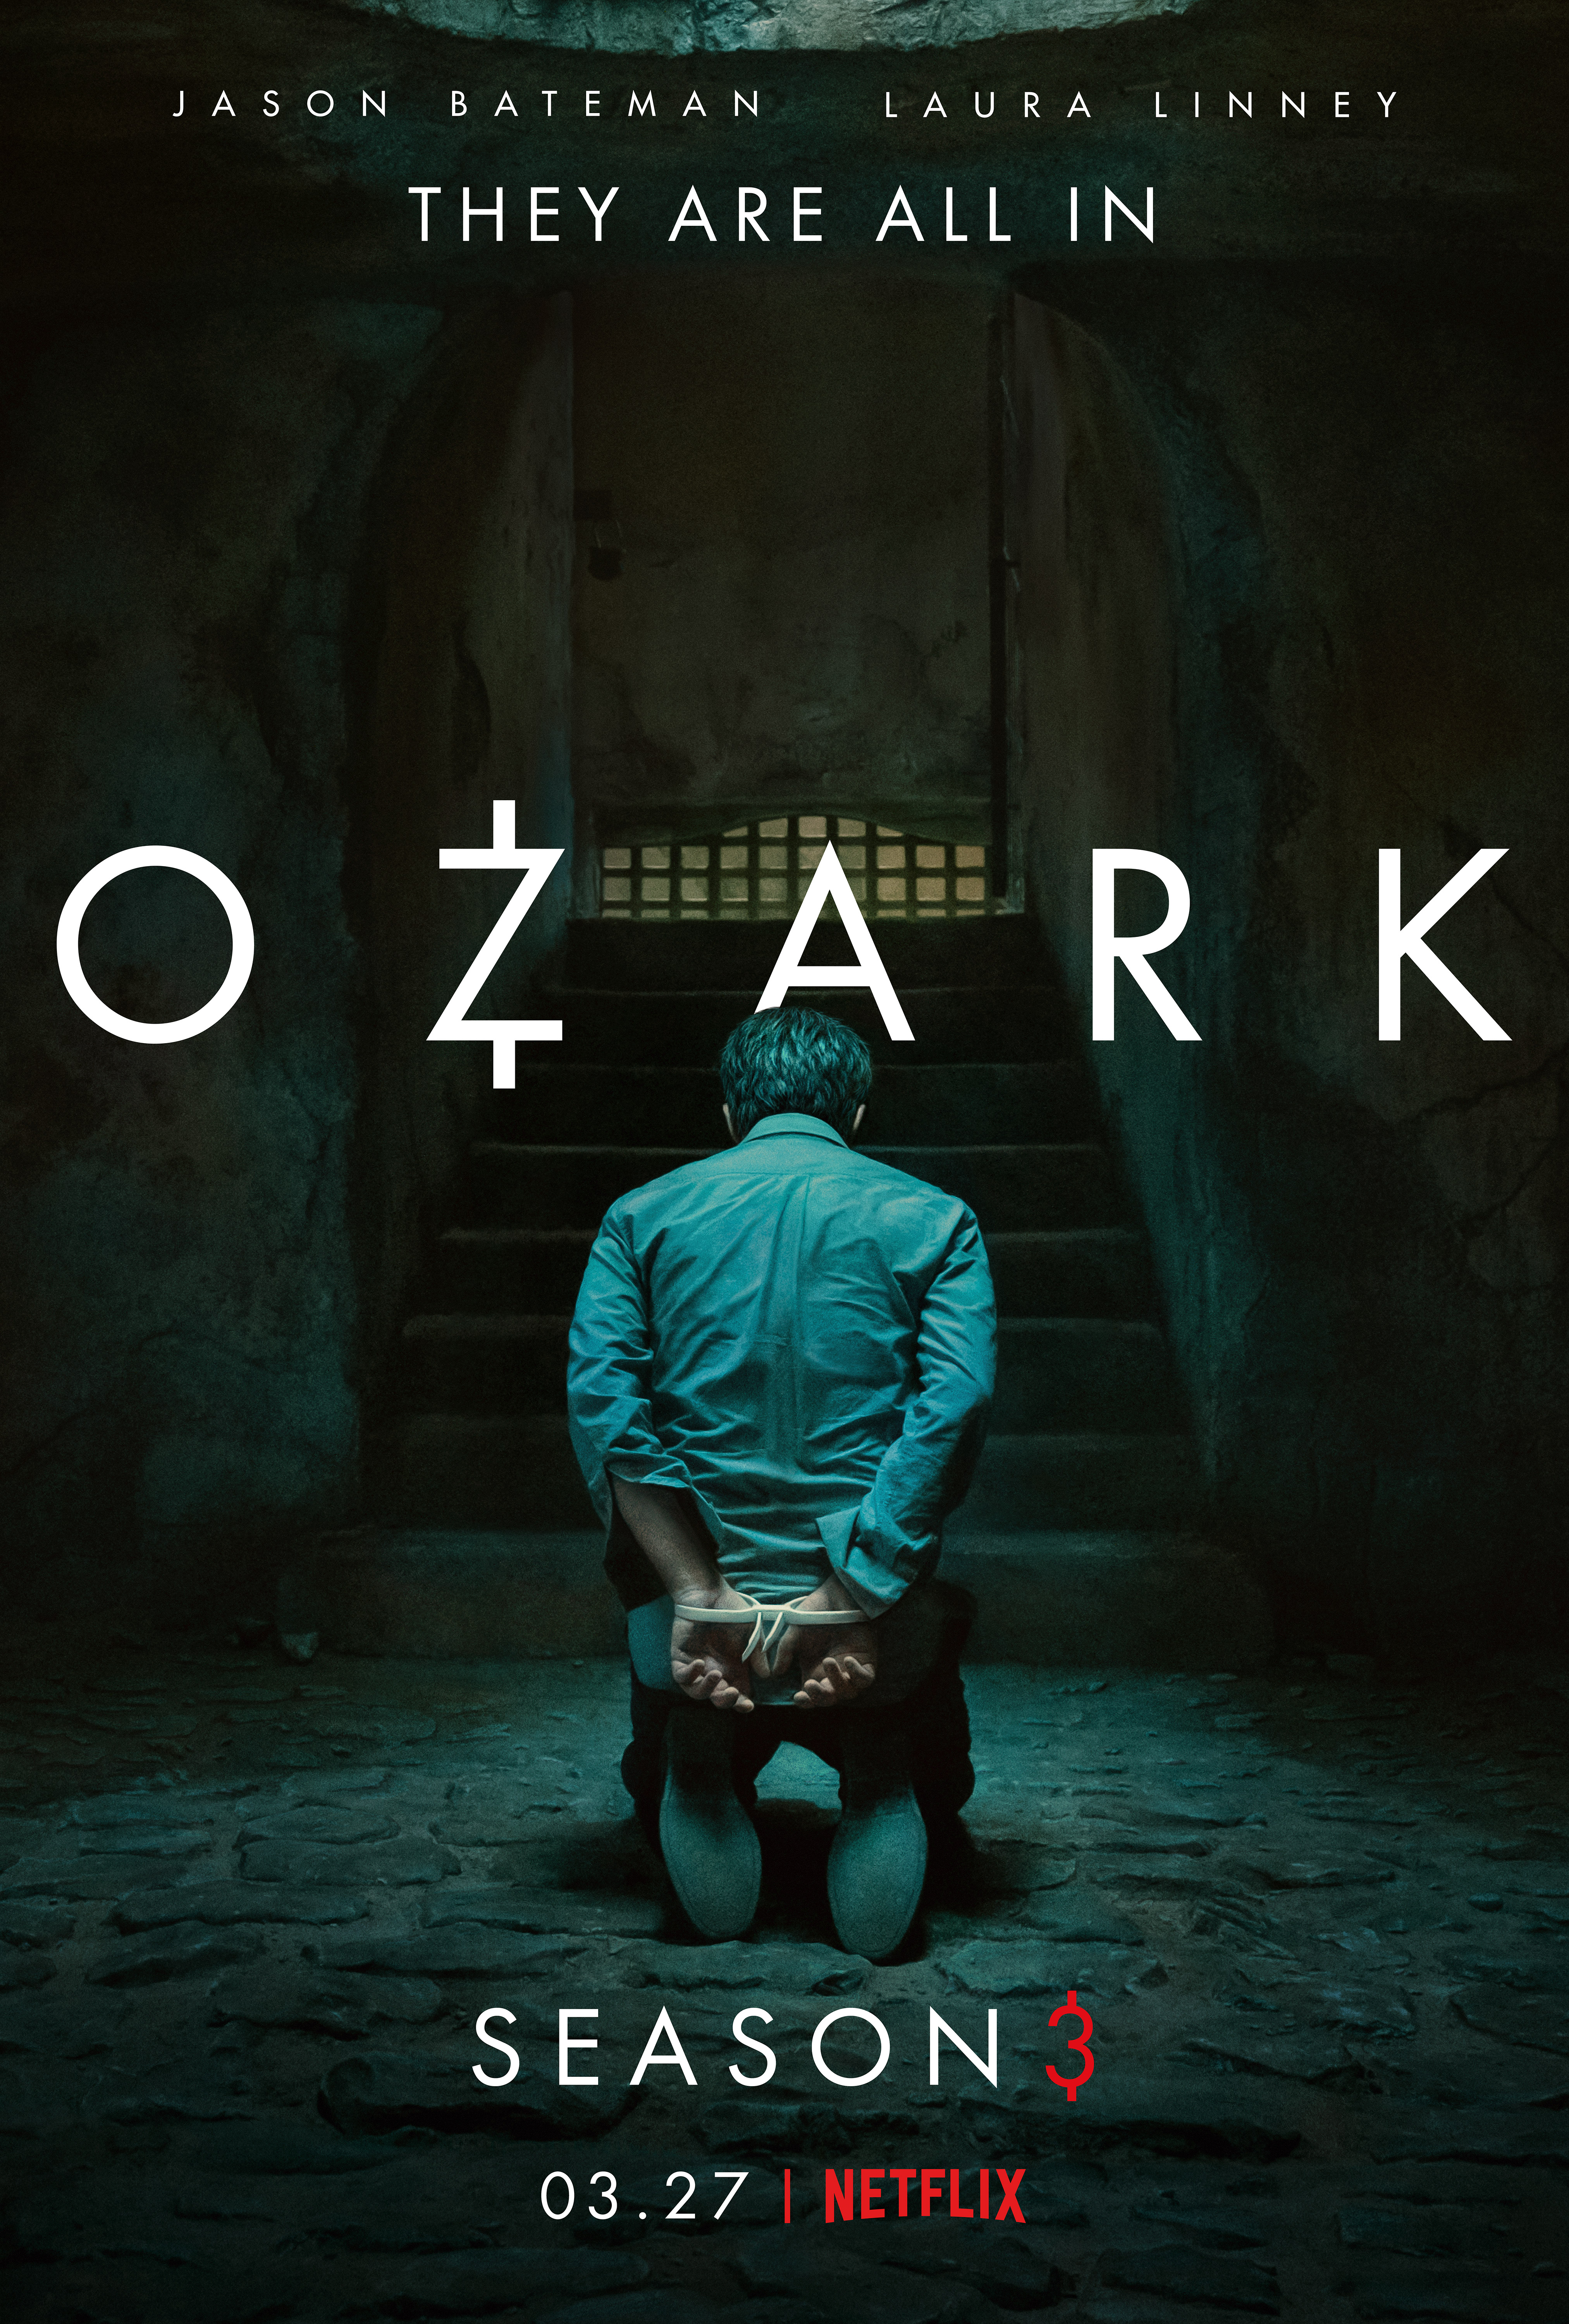 Ozark series three review: Laura Linney breaks bad